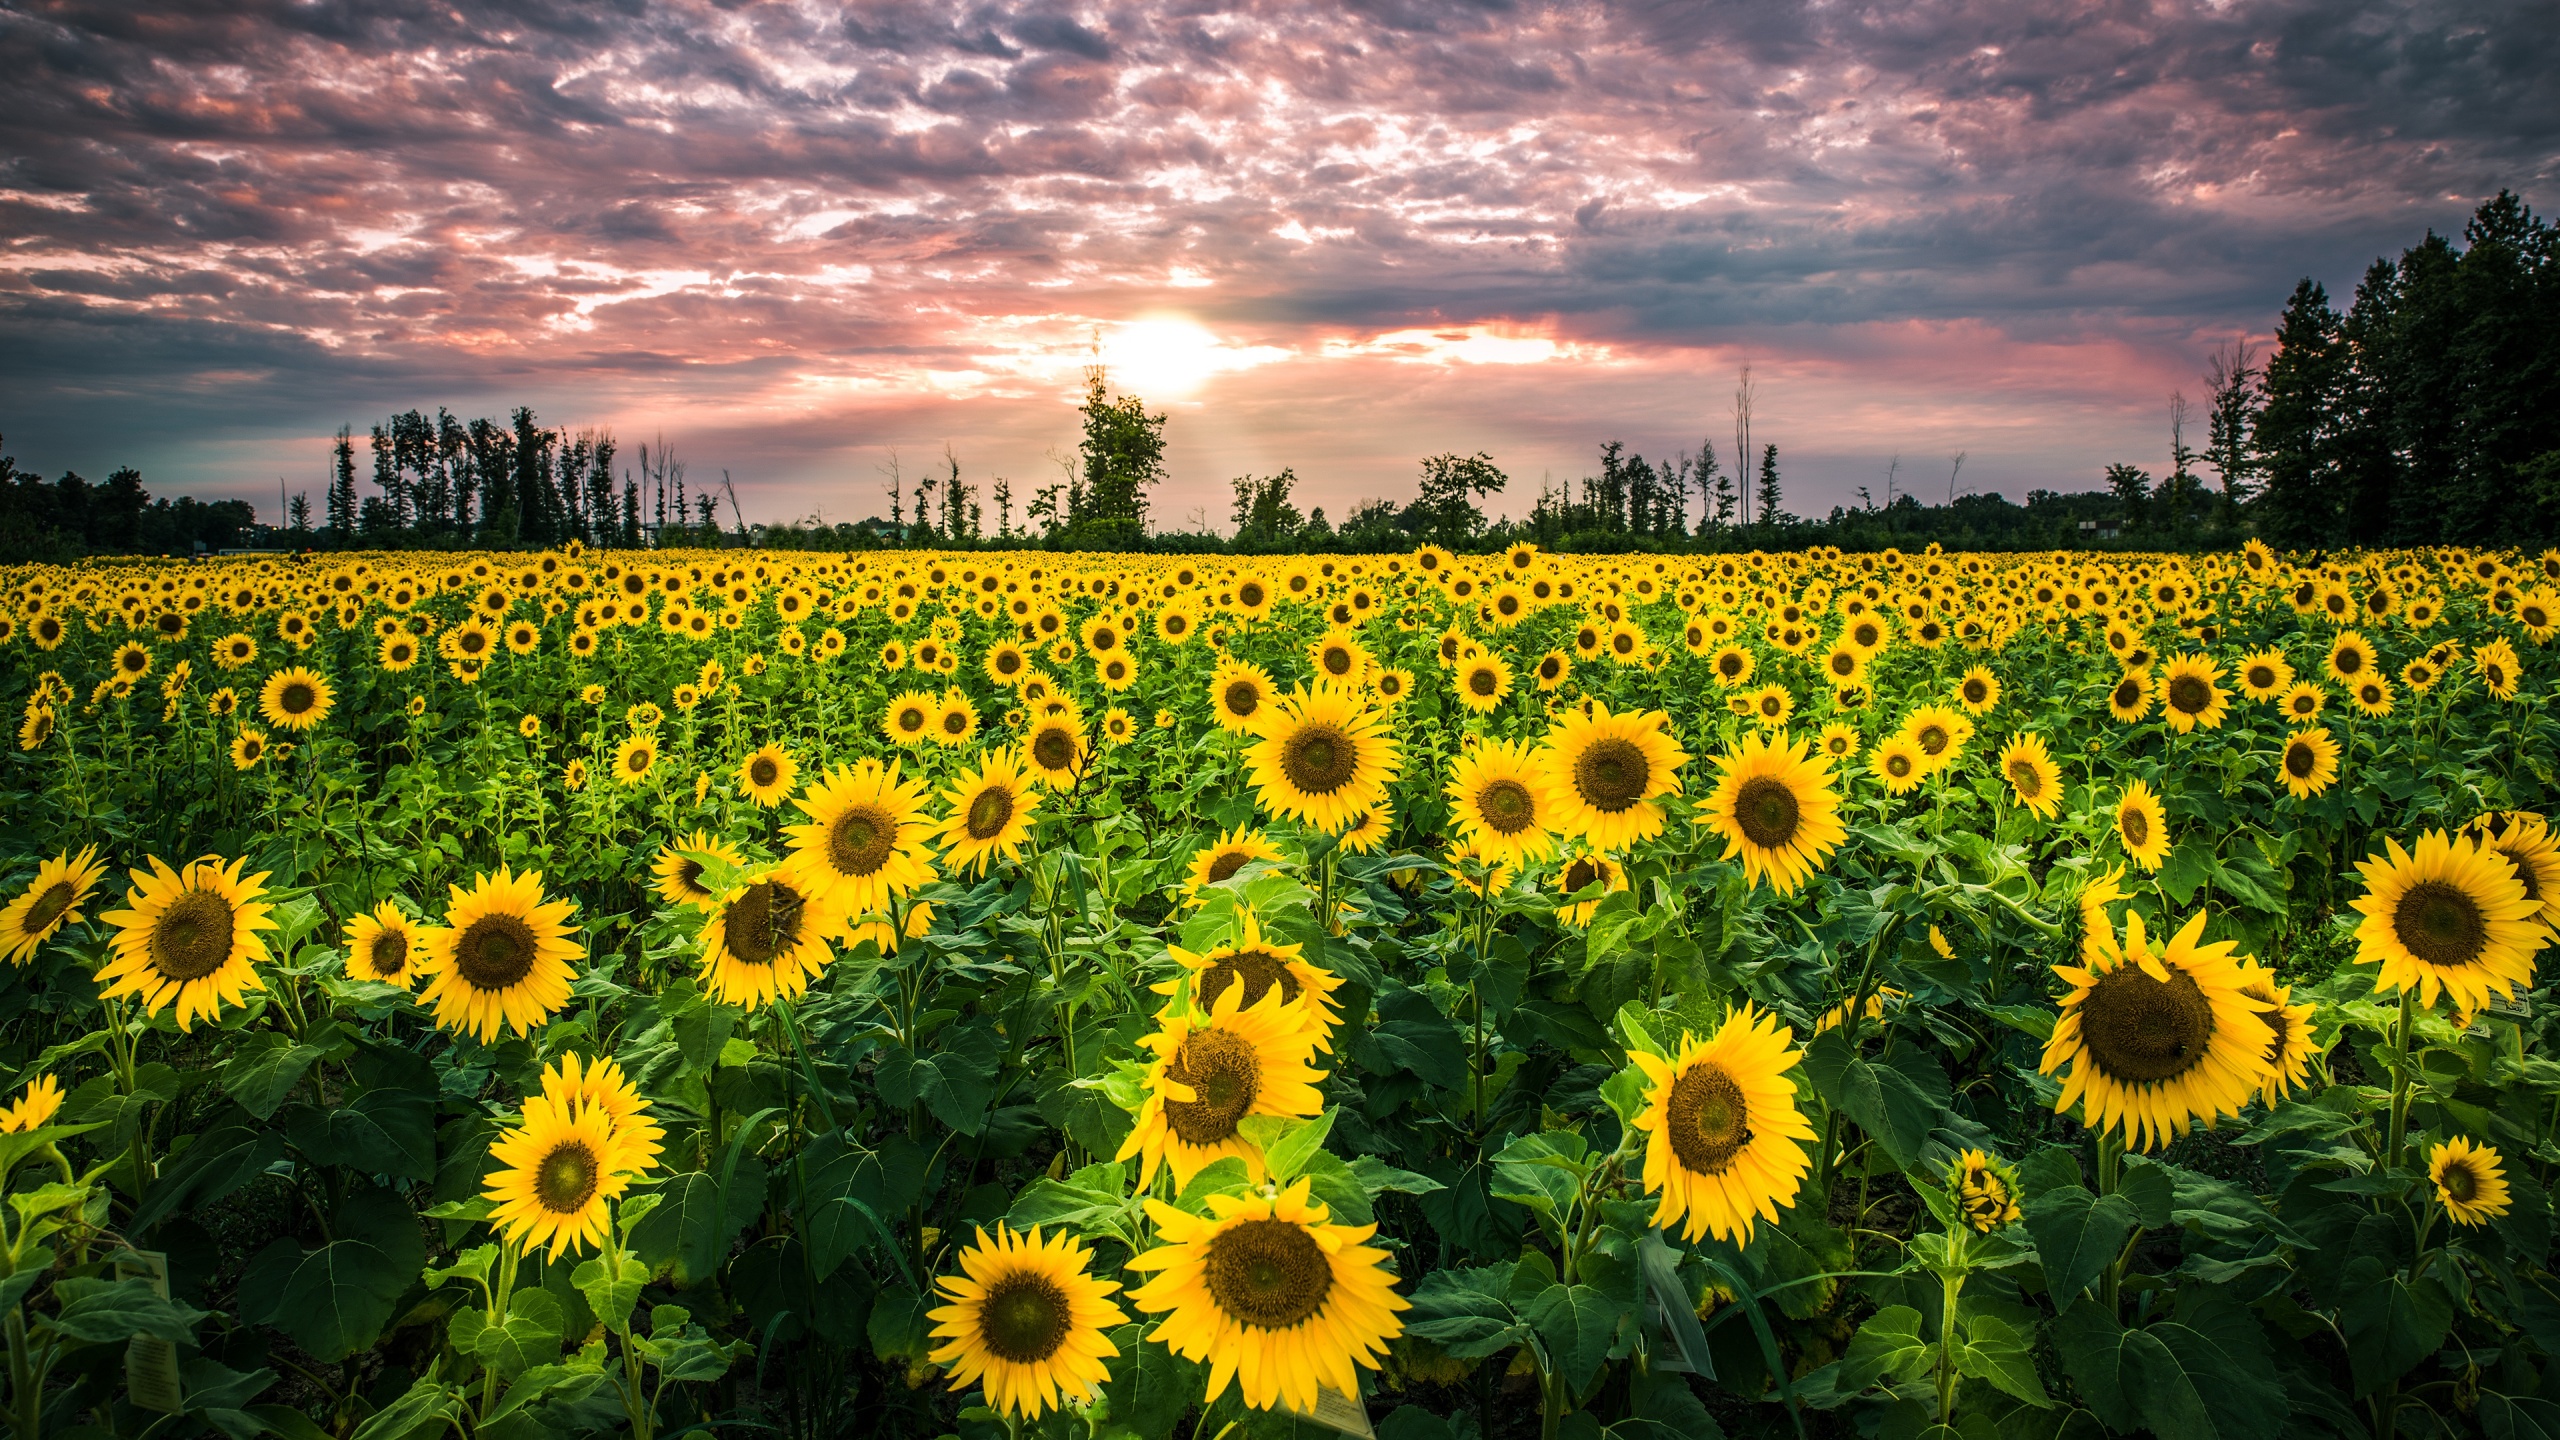 Big Sunflower Field Wallpapers 2560x1440 1887824